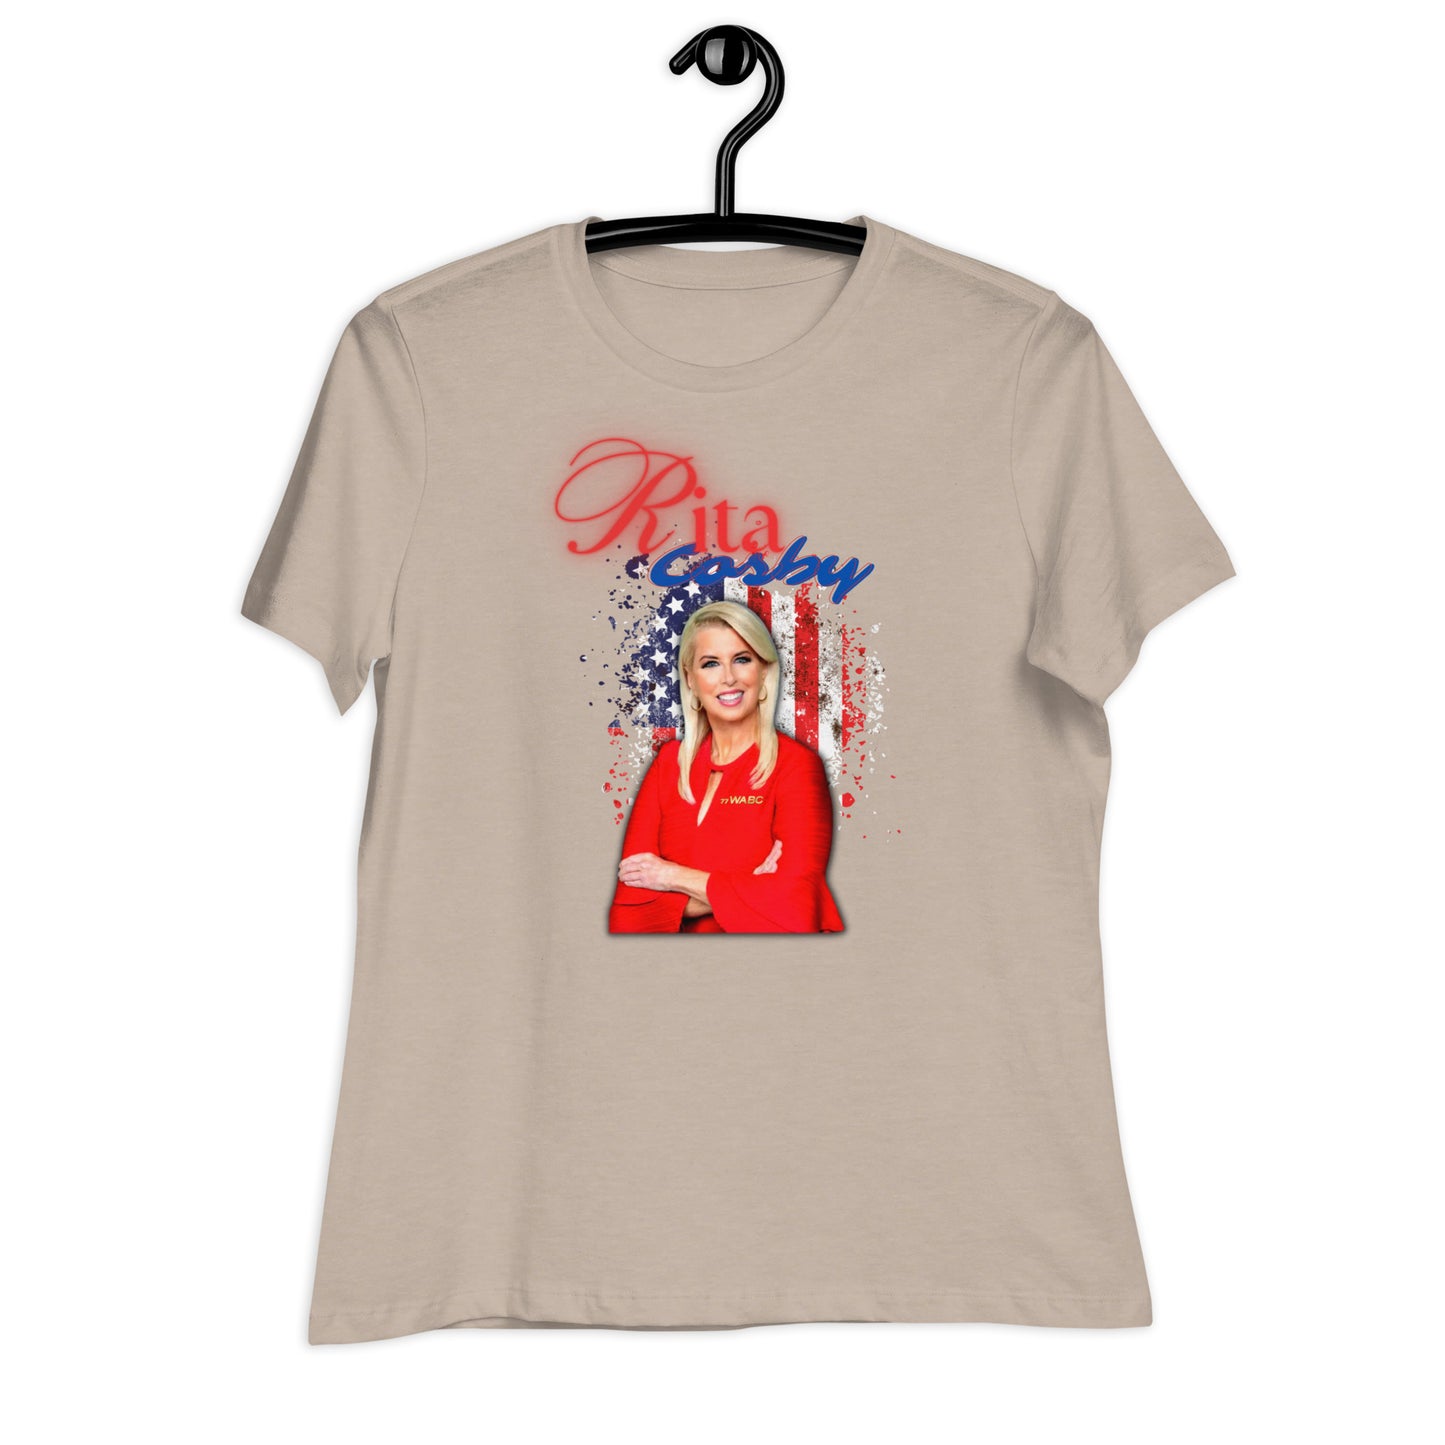 Rita Cosby Women's Relaxed T-Shirt